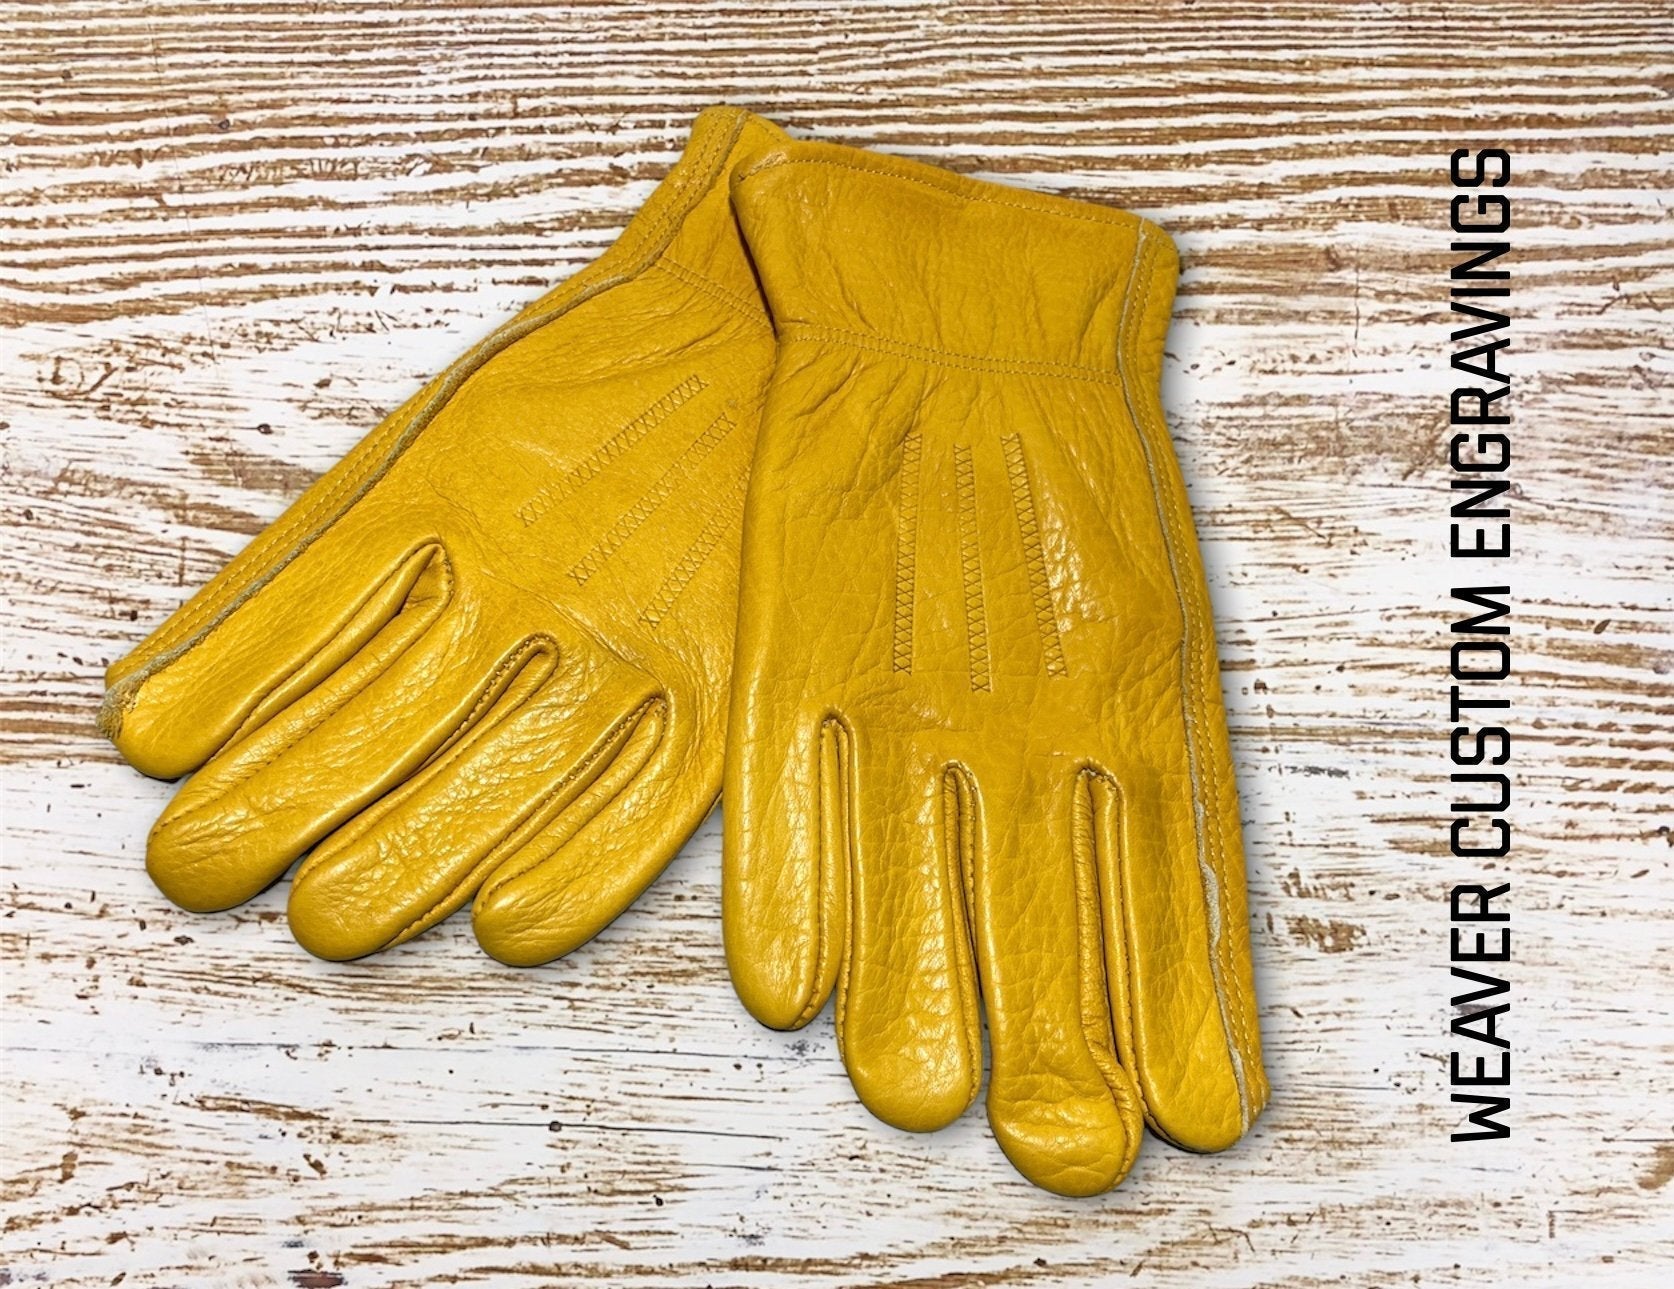 "Trucking/Farm" Custom Gloves Gloves weaver custom gloves   